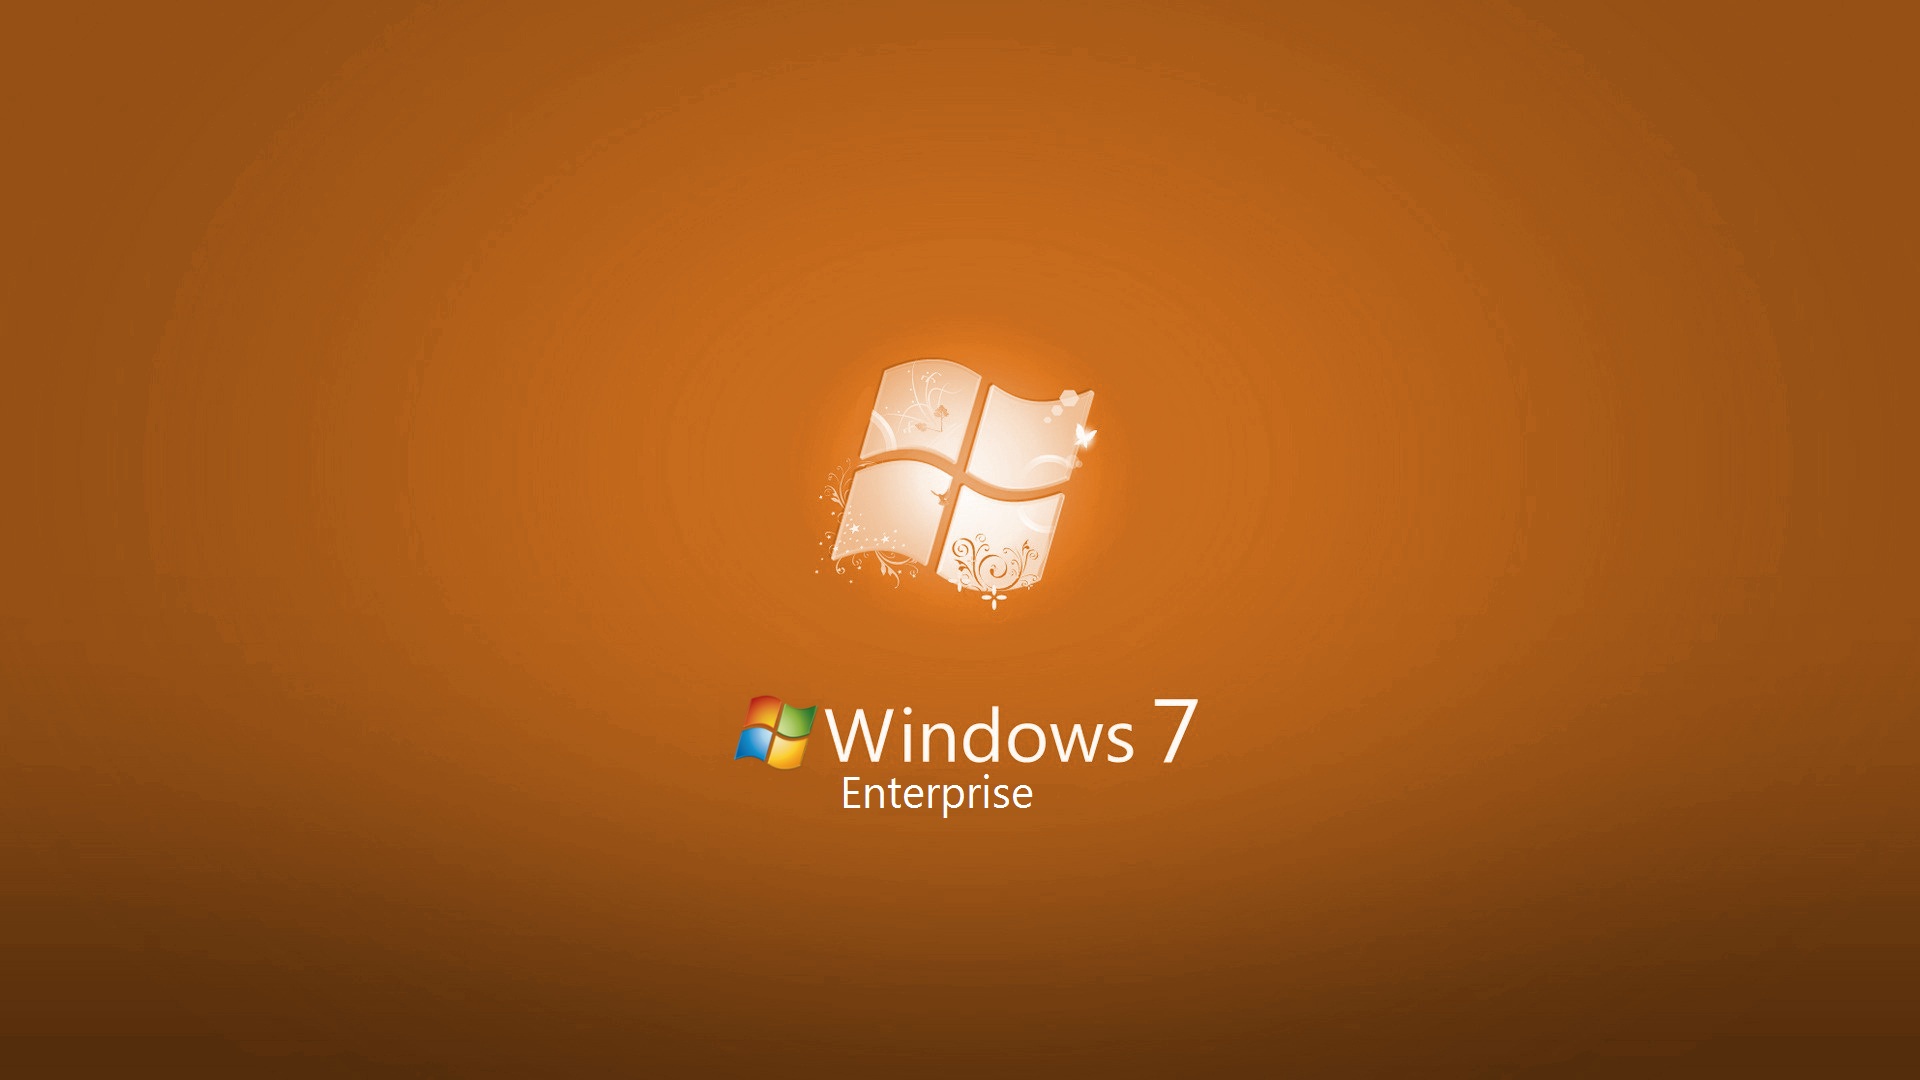 Windows 7 Enterprise miễn phí tải về và sử dụng sẽ giúp cho người dùng tiết kiệm được chi phí cho việc sử dụng phần mềm. Hãy trải nghiệm và khám phá những tính năng chất lượng cao của Windows 7 Enterprise bằng cách tải về và sử dụng nó ngay hôm nay.